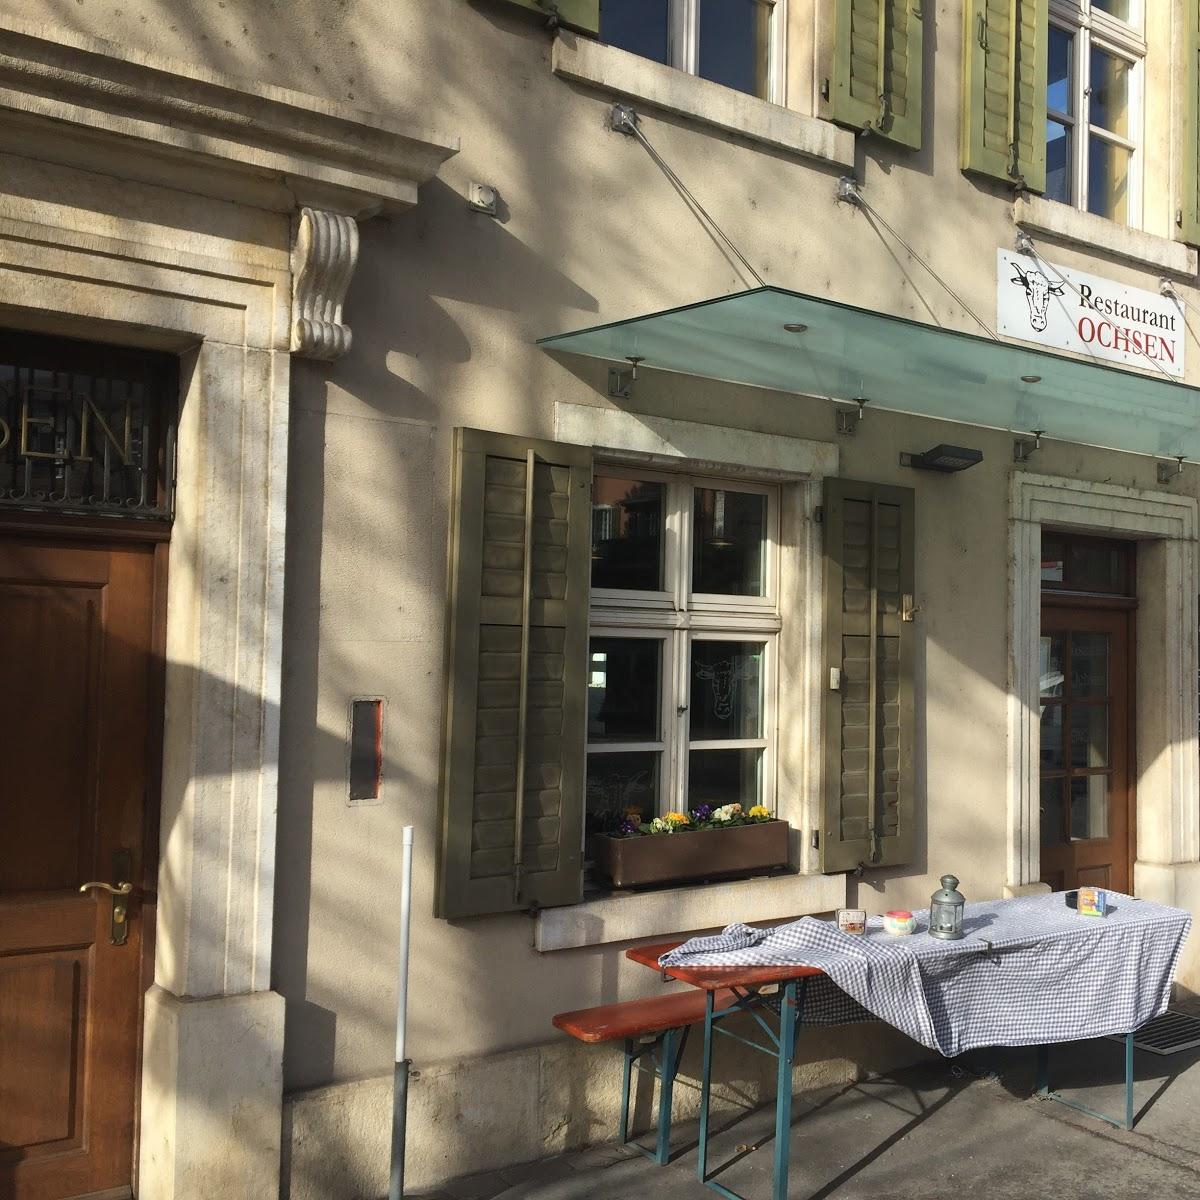 Restaurant "Ochsen" in Laufen